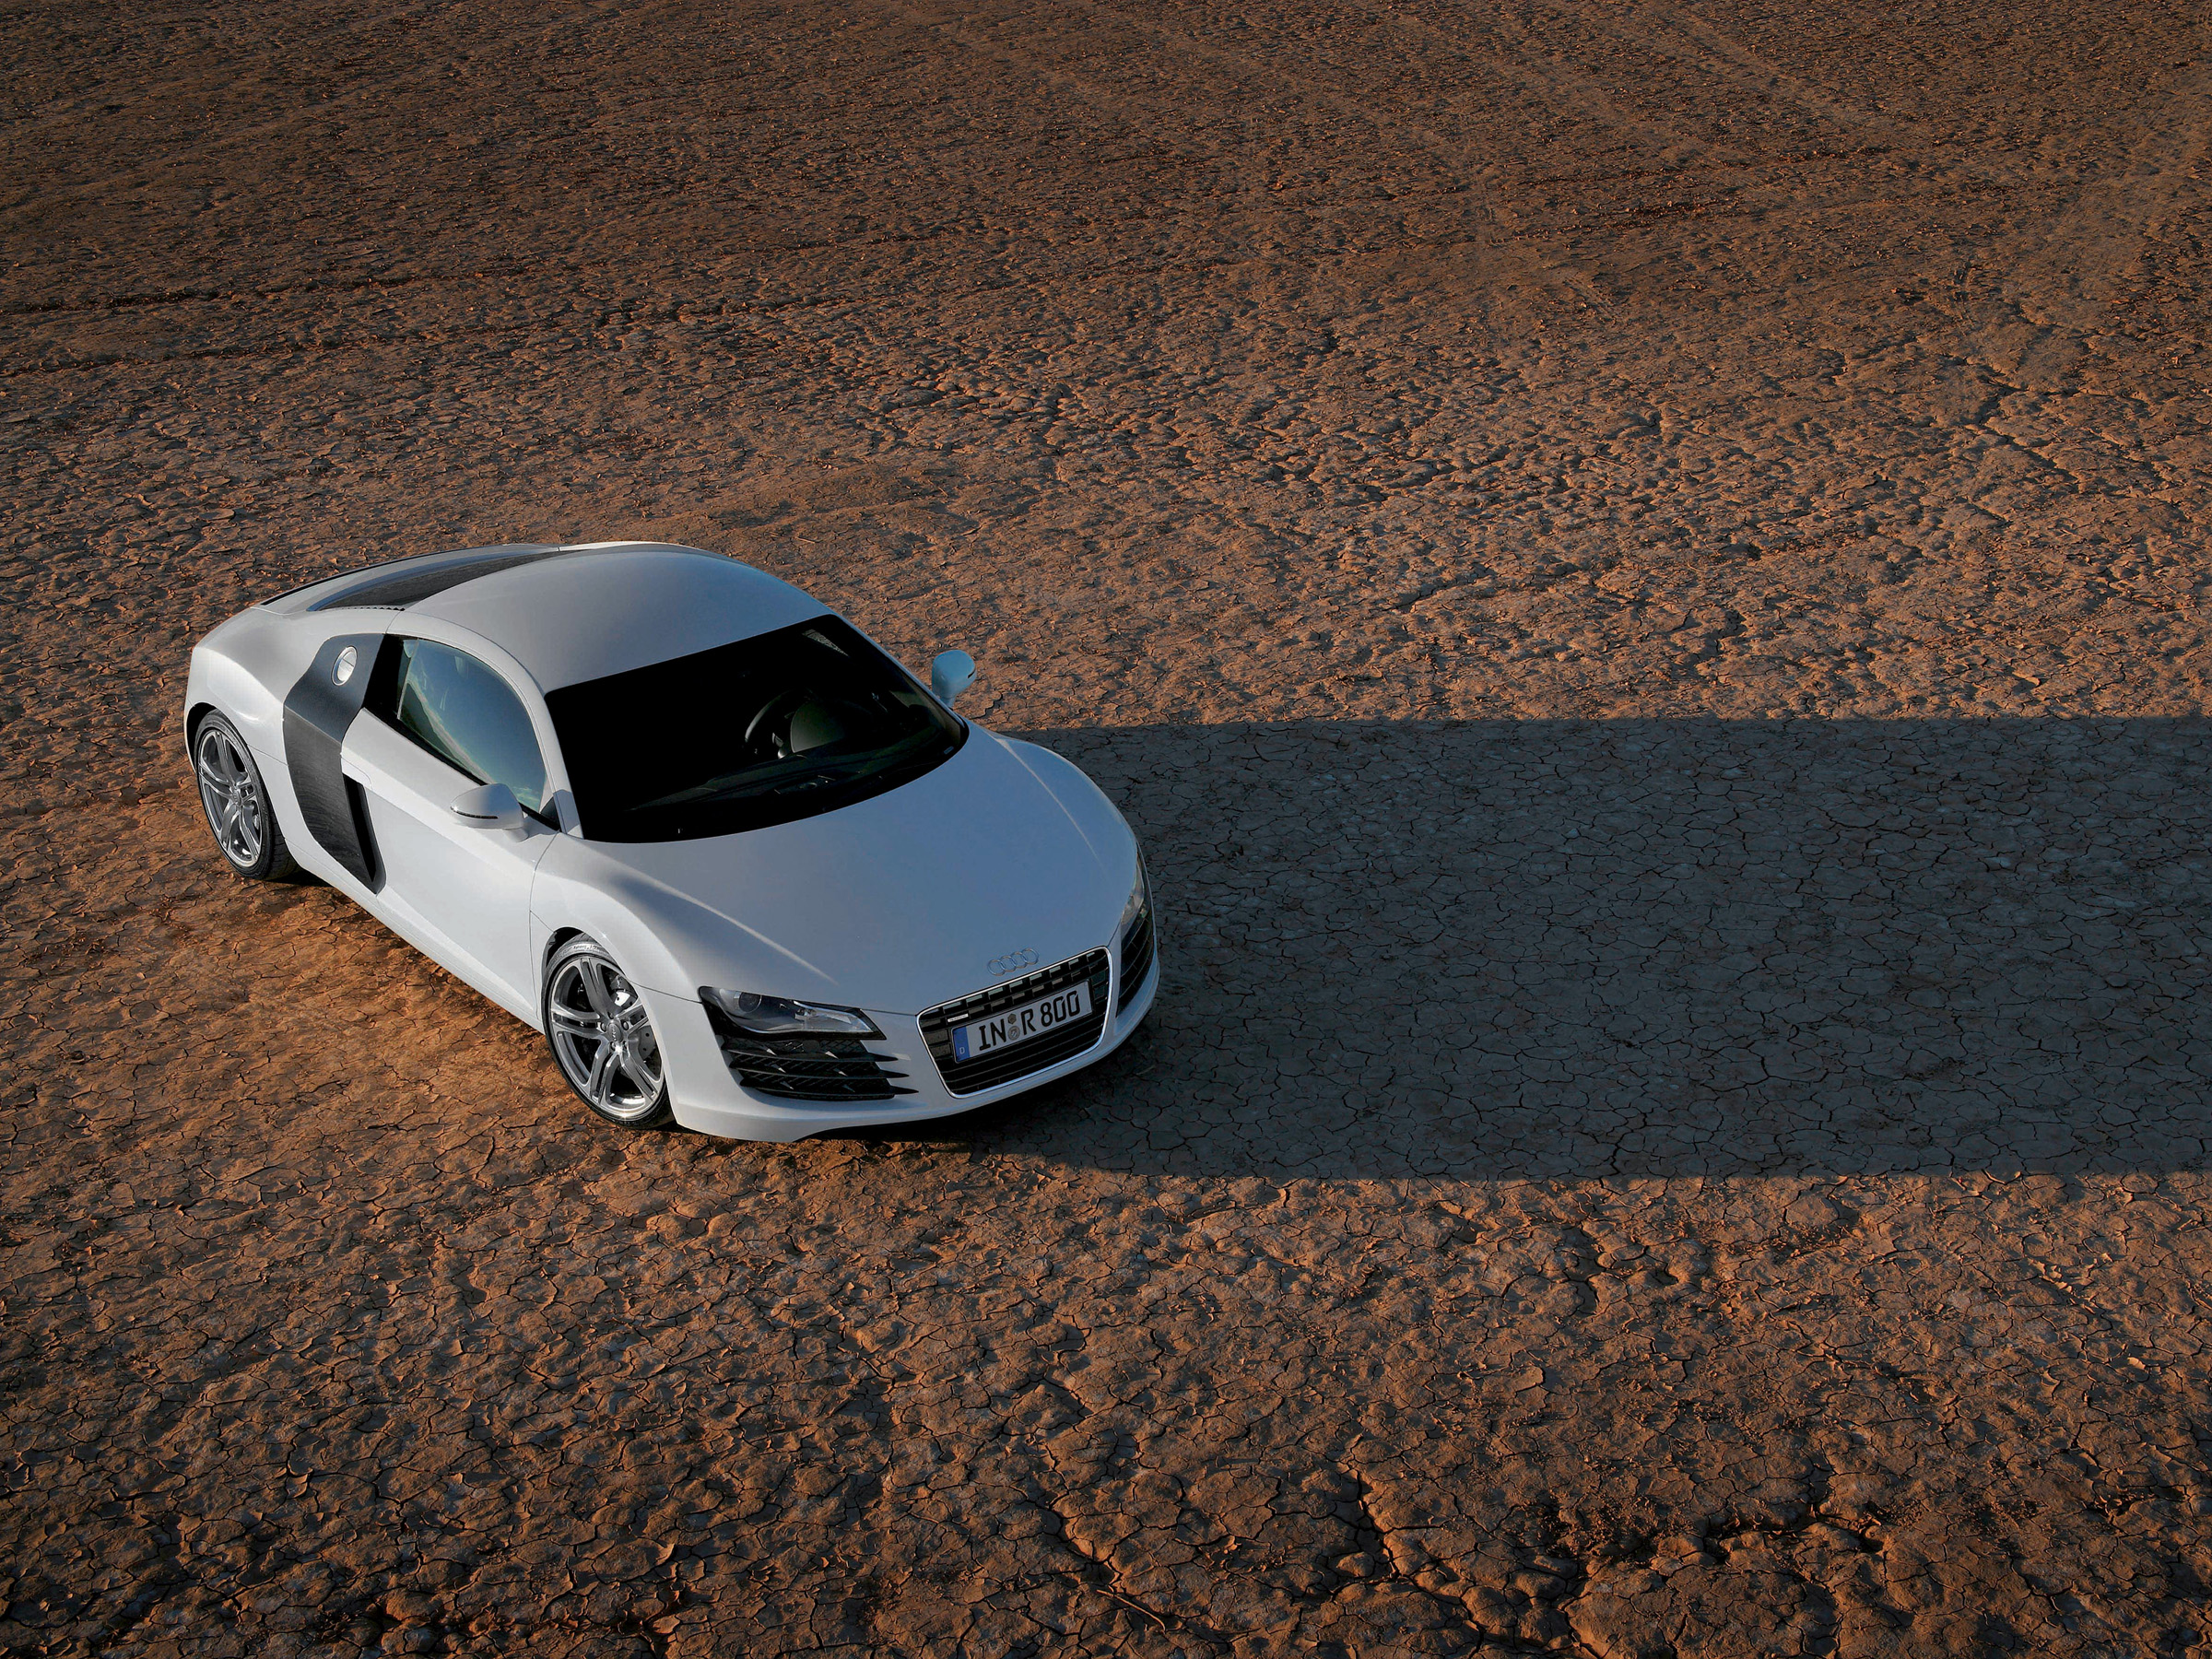 cars, deserts, Audi, silver, Audi R8, German cars - desktop wallpaper